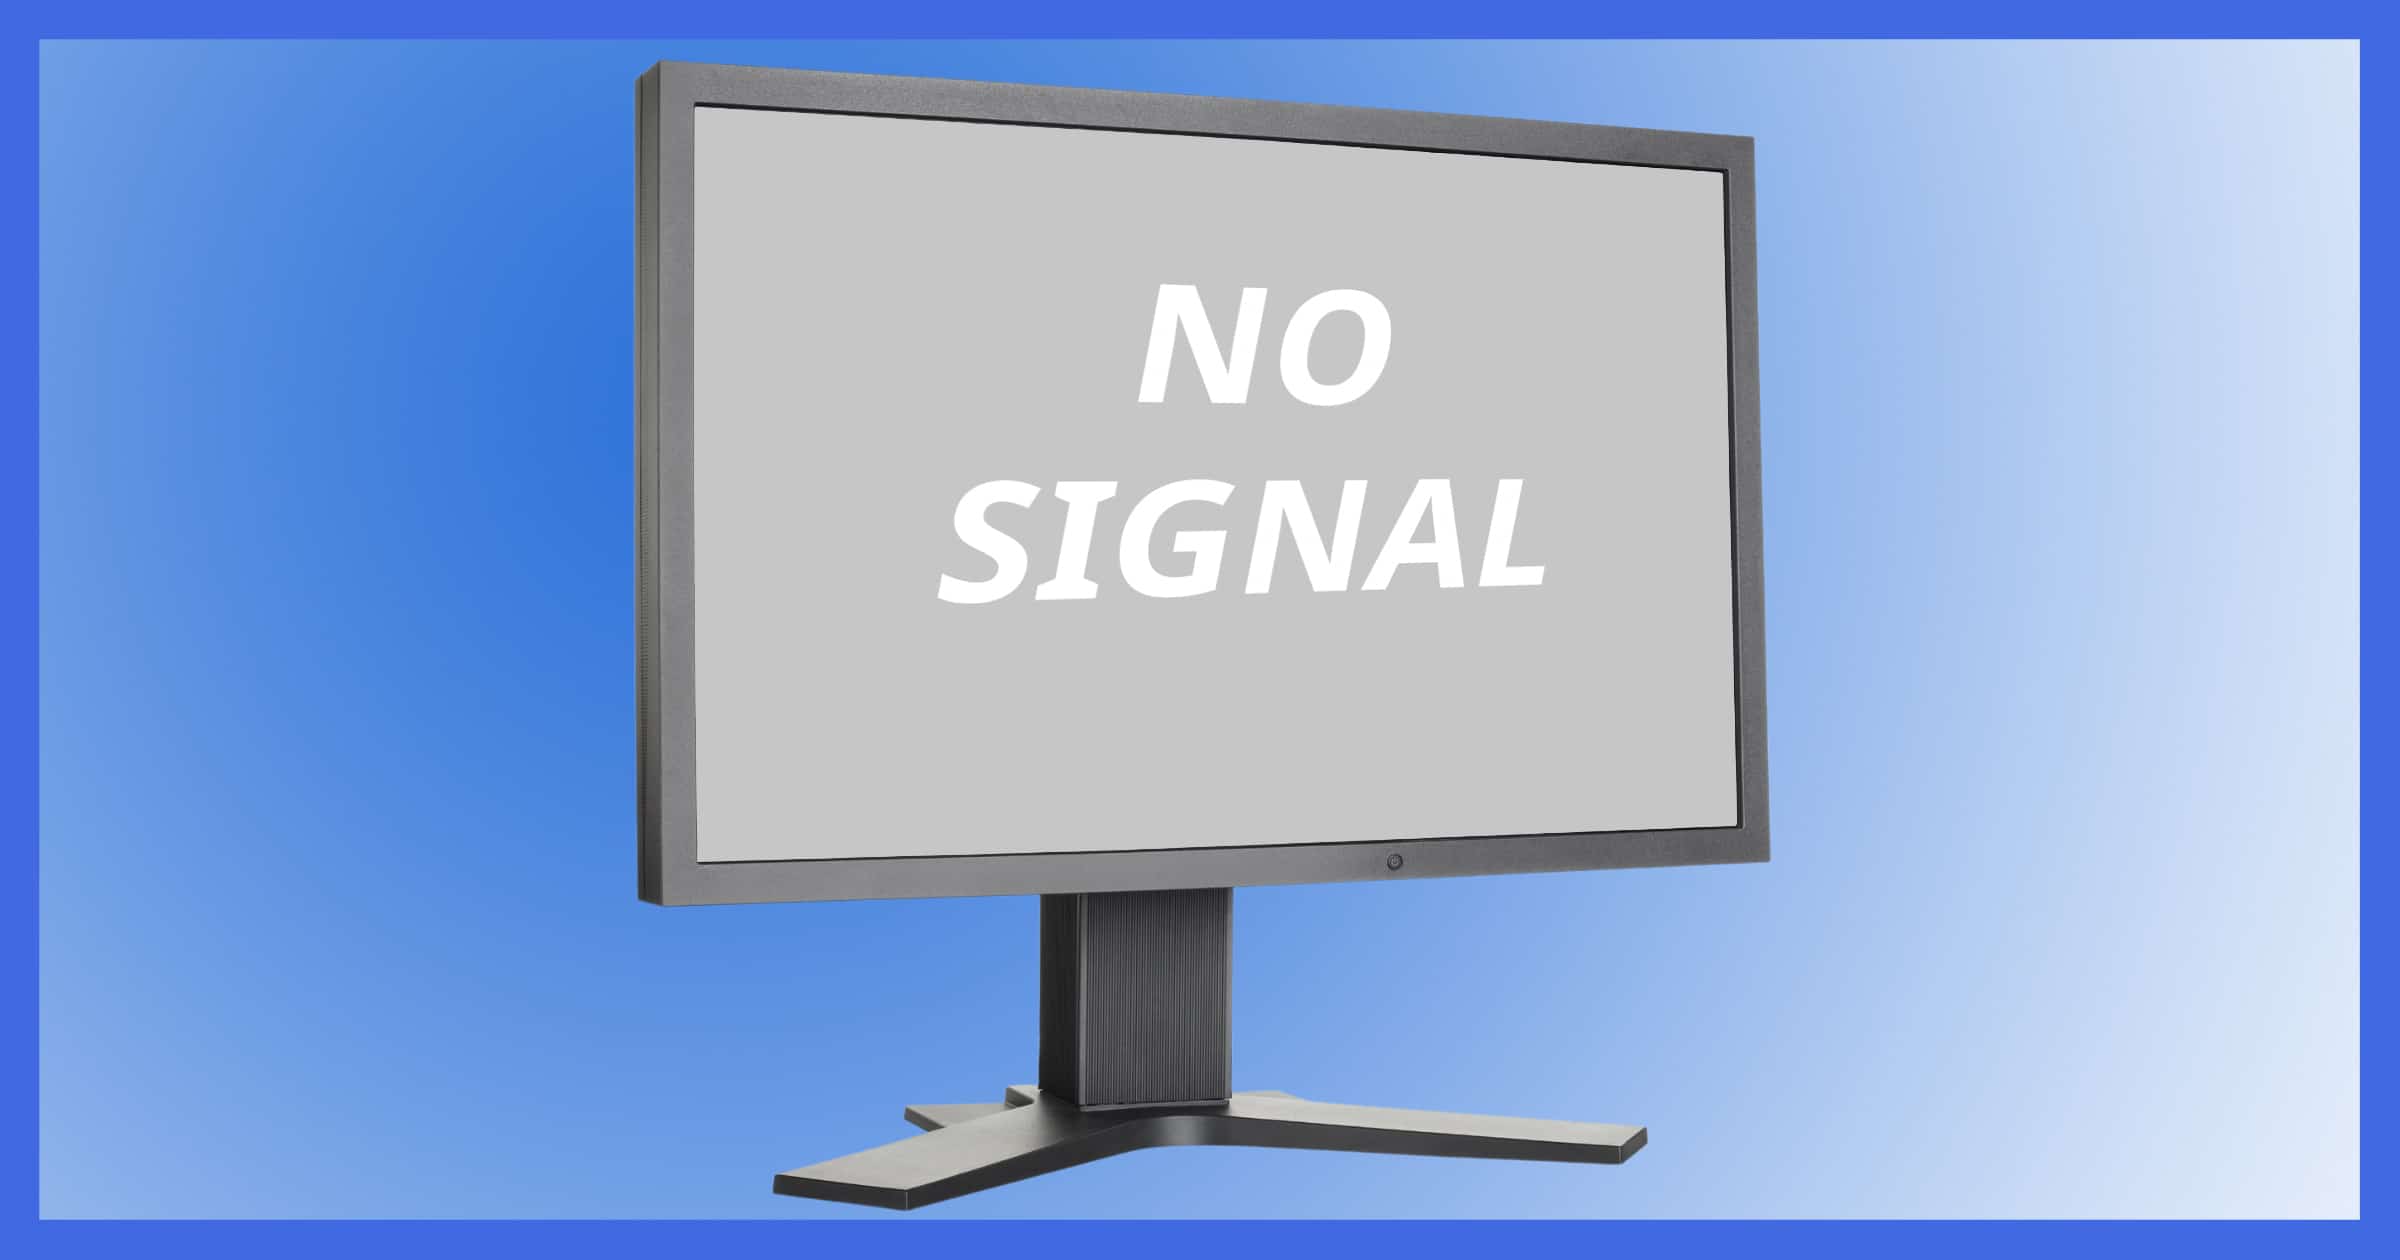 computer says no signal